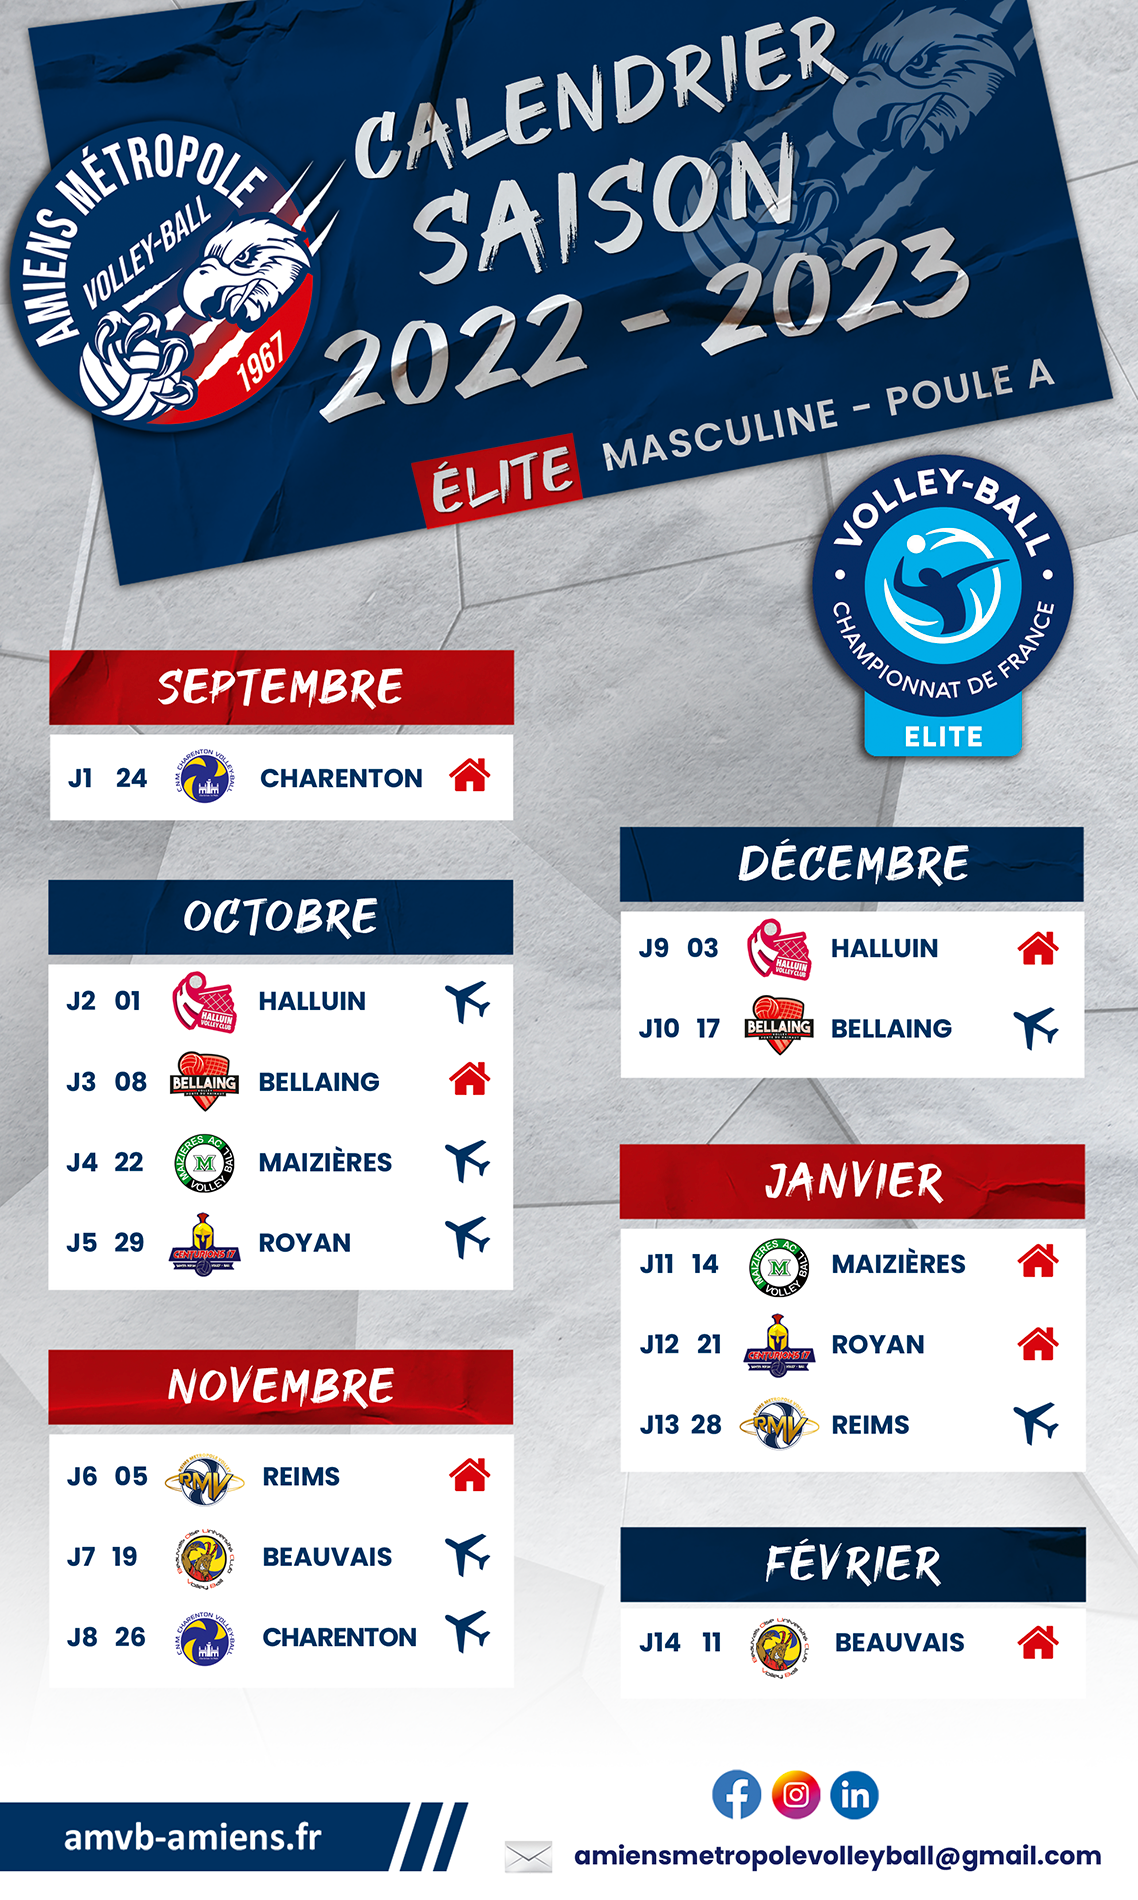 Amiens Métropole Volley Ball - Saison 2022-2023 - Championnat Élite